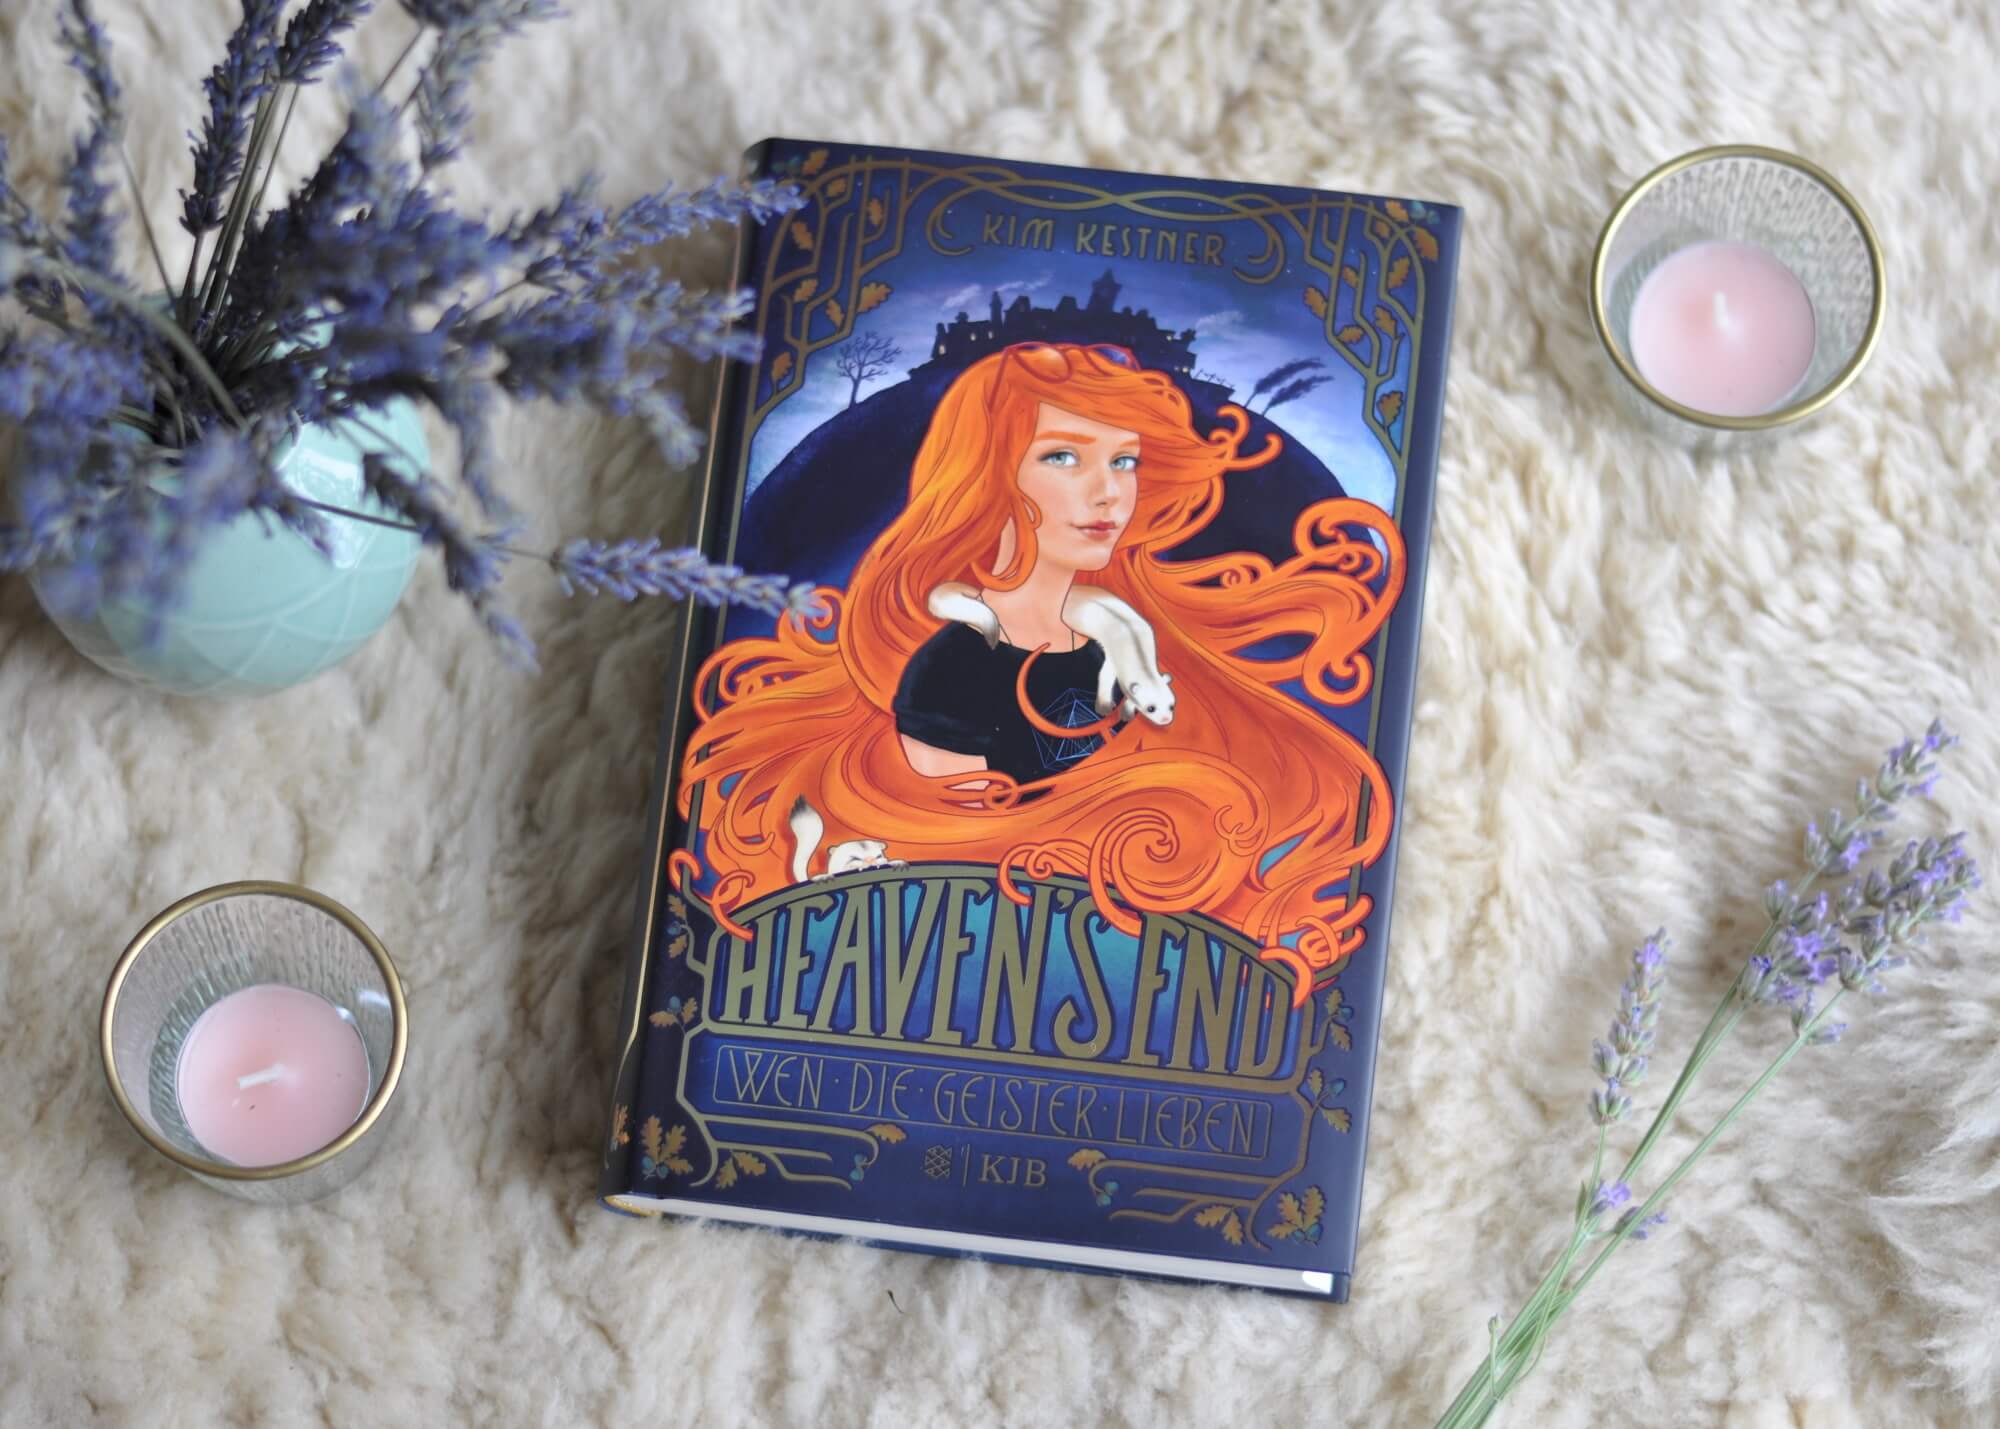 In Heaven’s End, einem kleinen schottischen Küstenort, lebt die 15-jährige Jojo mit ihrer Familie – der lebenden und der toten. Jojo kann Geister sehen, nur darf davon niemand etwas wissen. Auf einmal gehen unheimliche Dinge vor sich, die etwas mit schwarzer Magie zu tun haben könnten. Und mit einem dunklen Familiengeheimnis. #geister #buch #fantasy #magie #schottland #lesen #romantasy